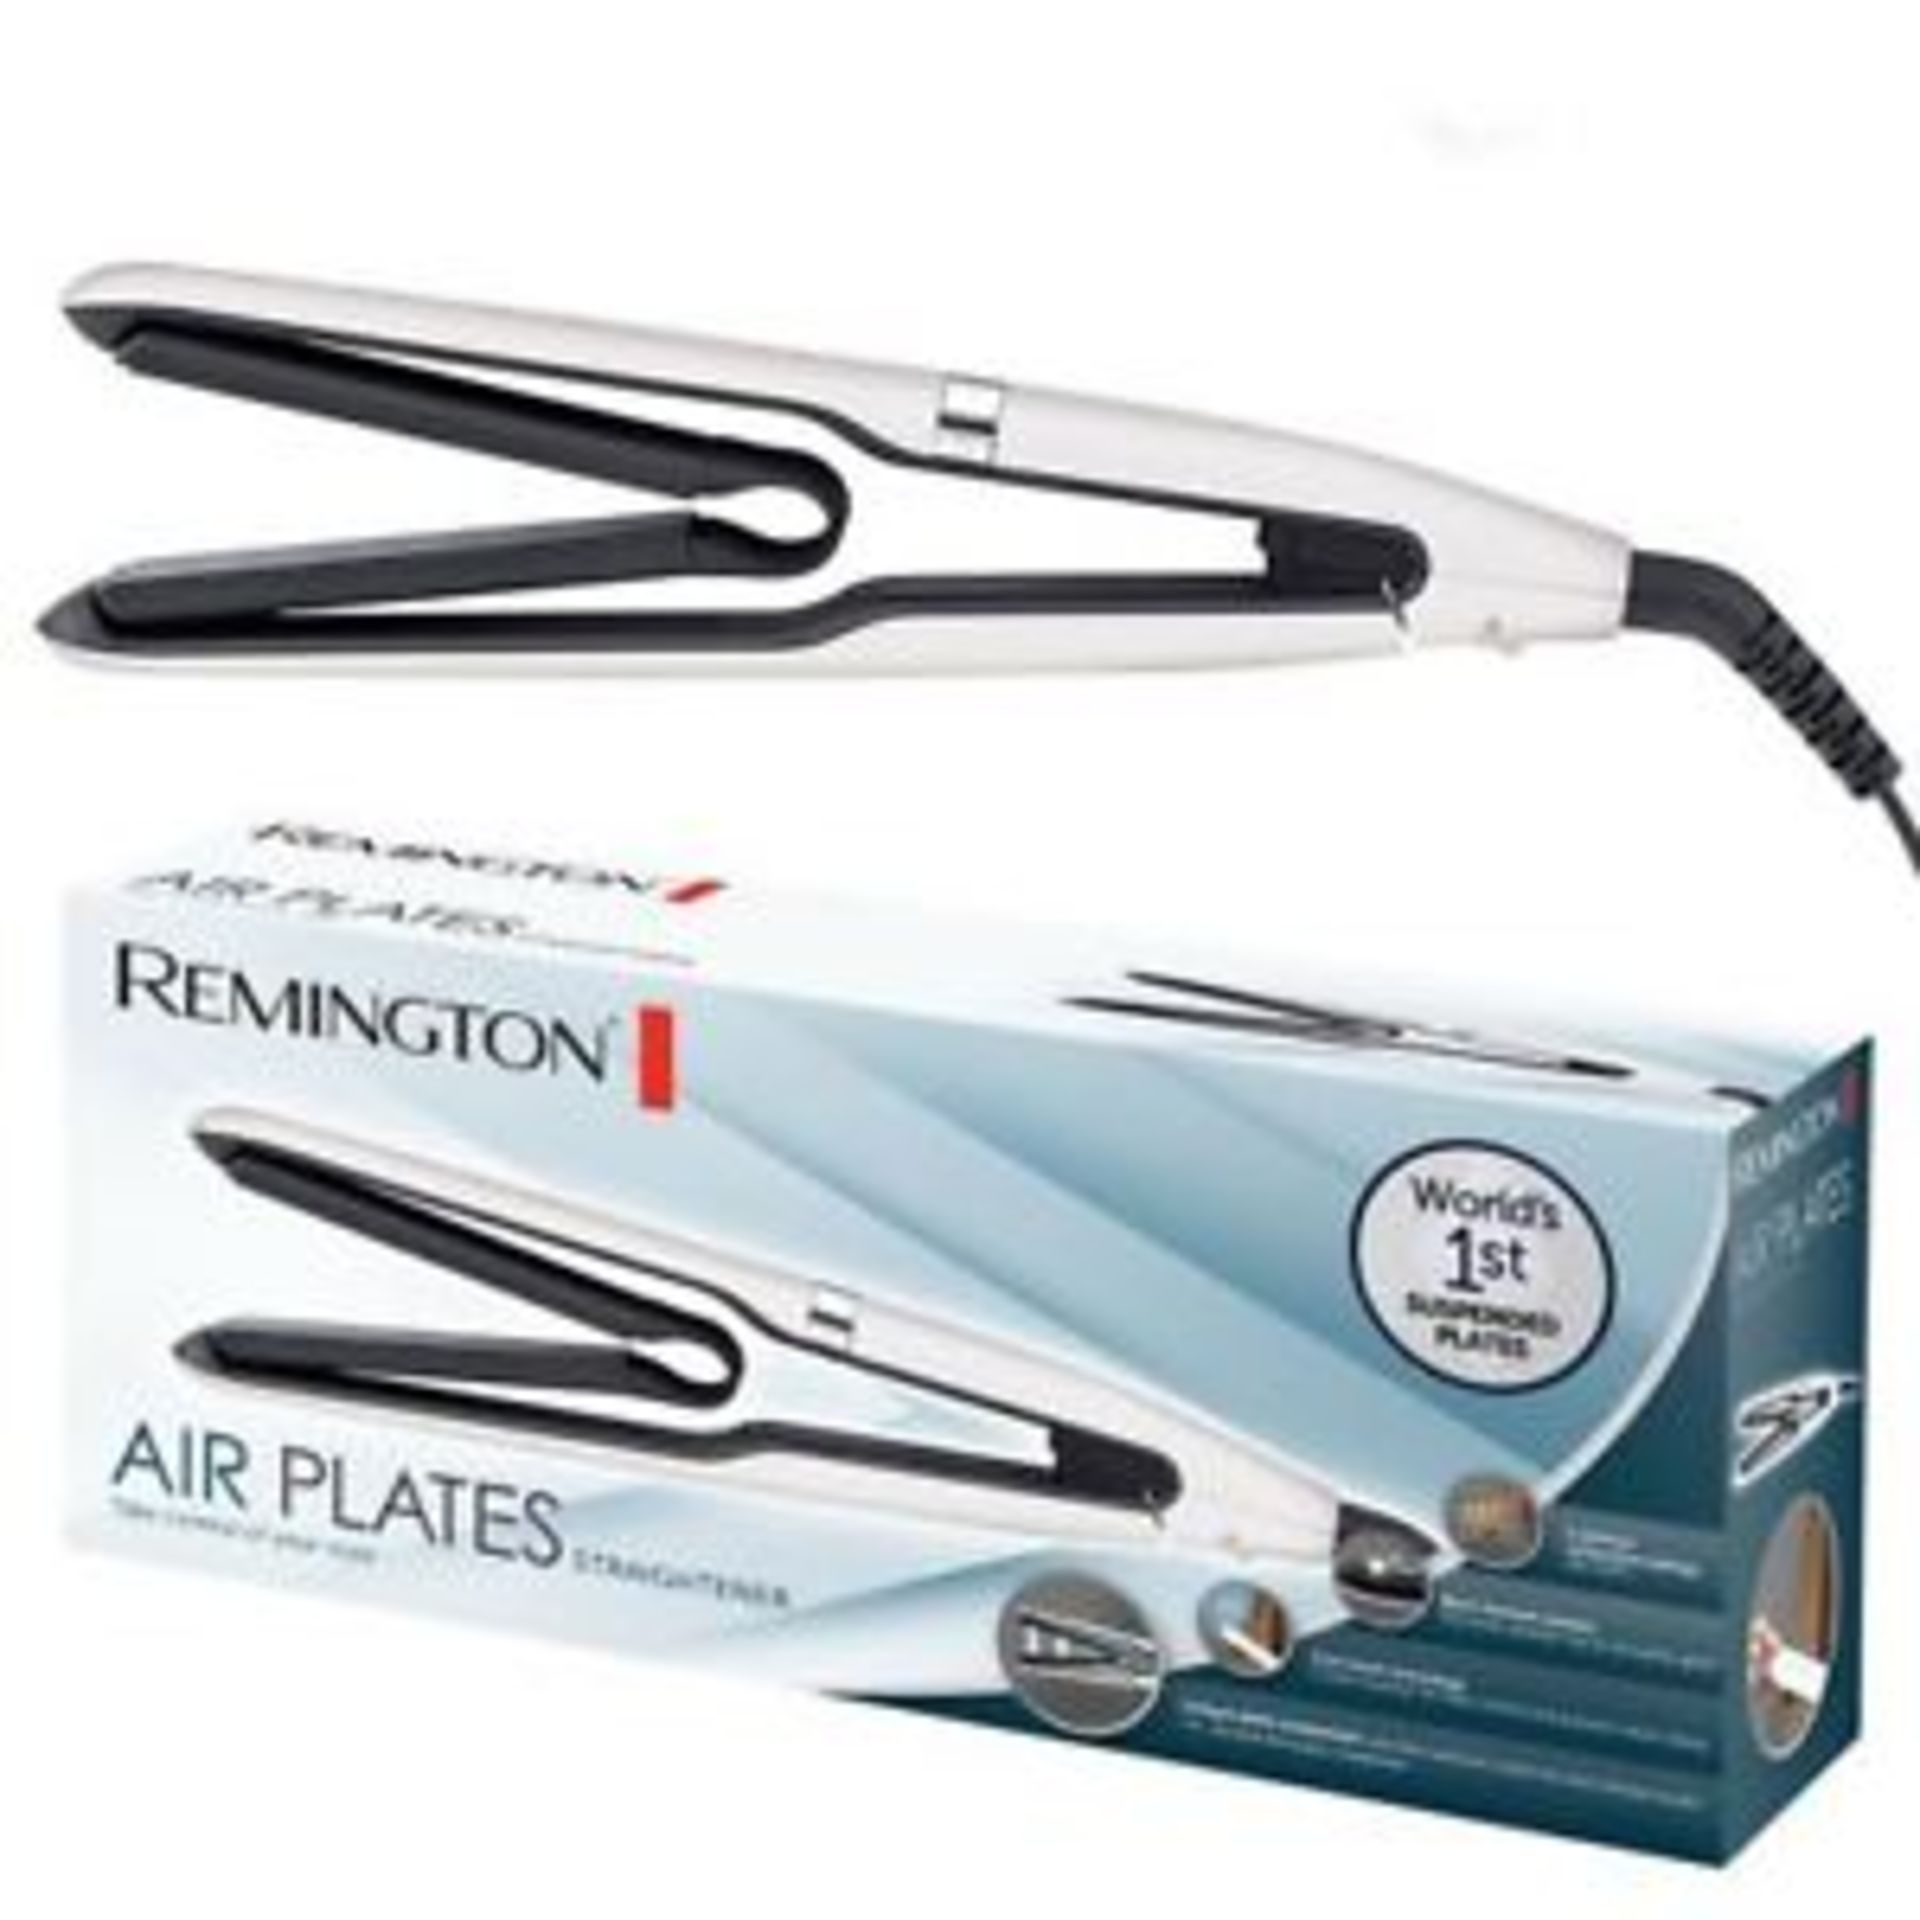 V Brand New Remington Air Plates Straightener - Argos Price £79.99 - 5 Optimum Temperature - Image 2 of 2